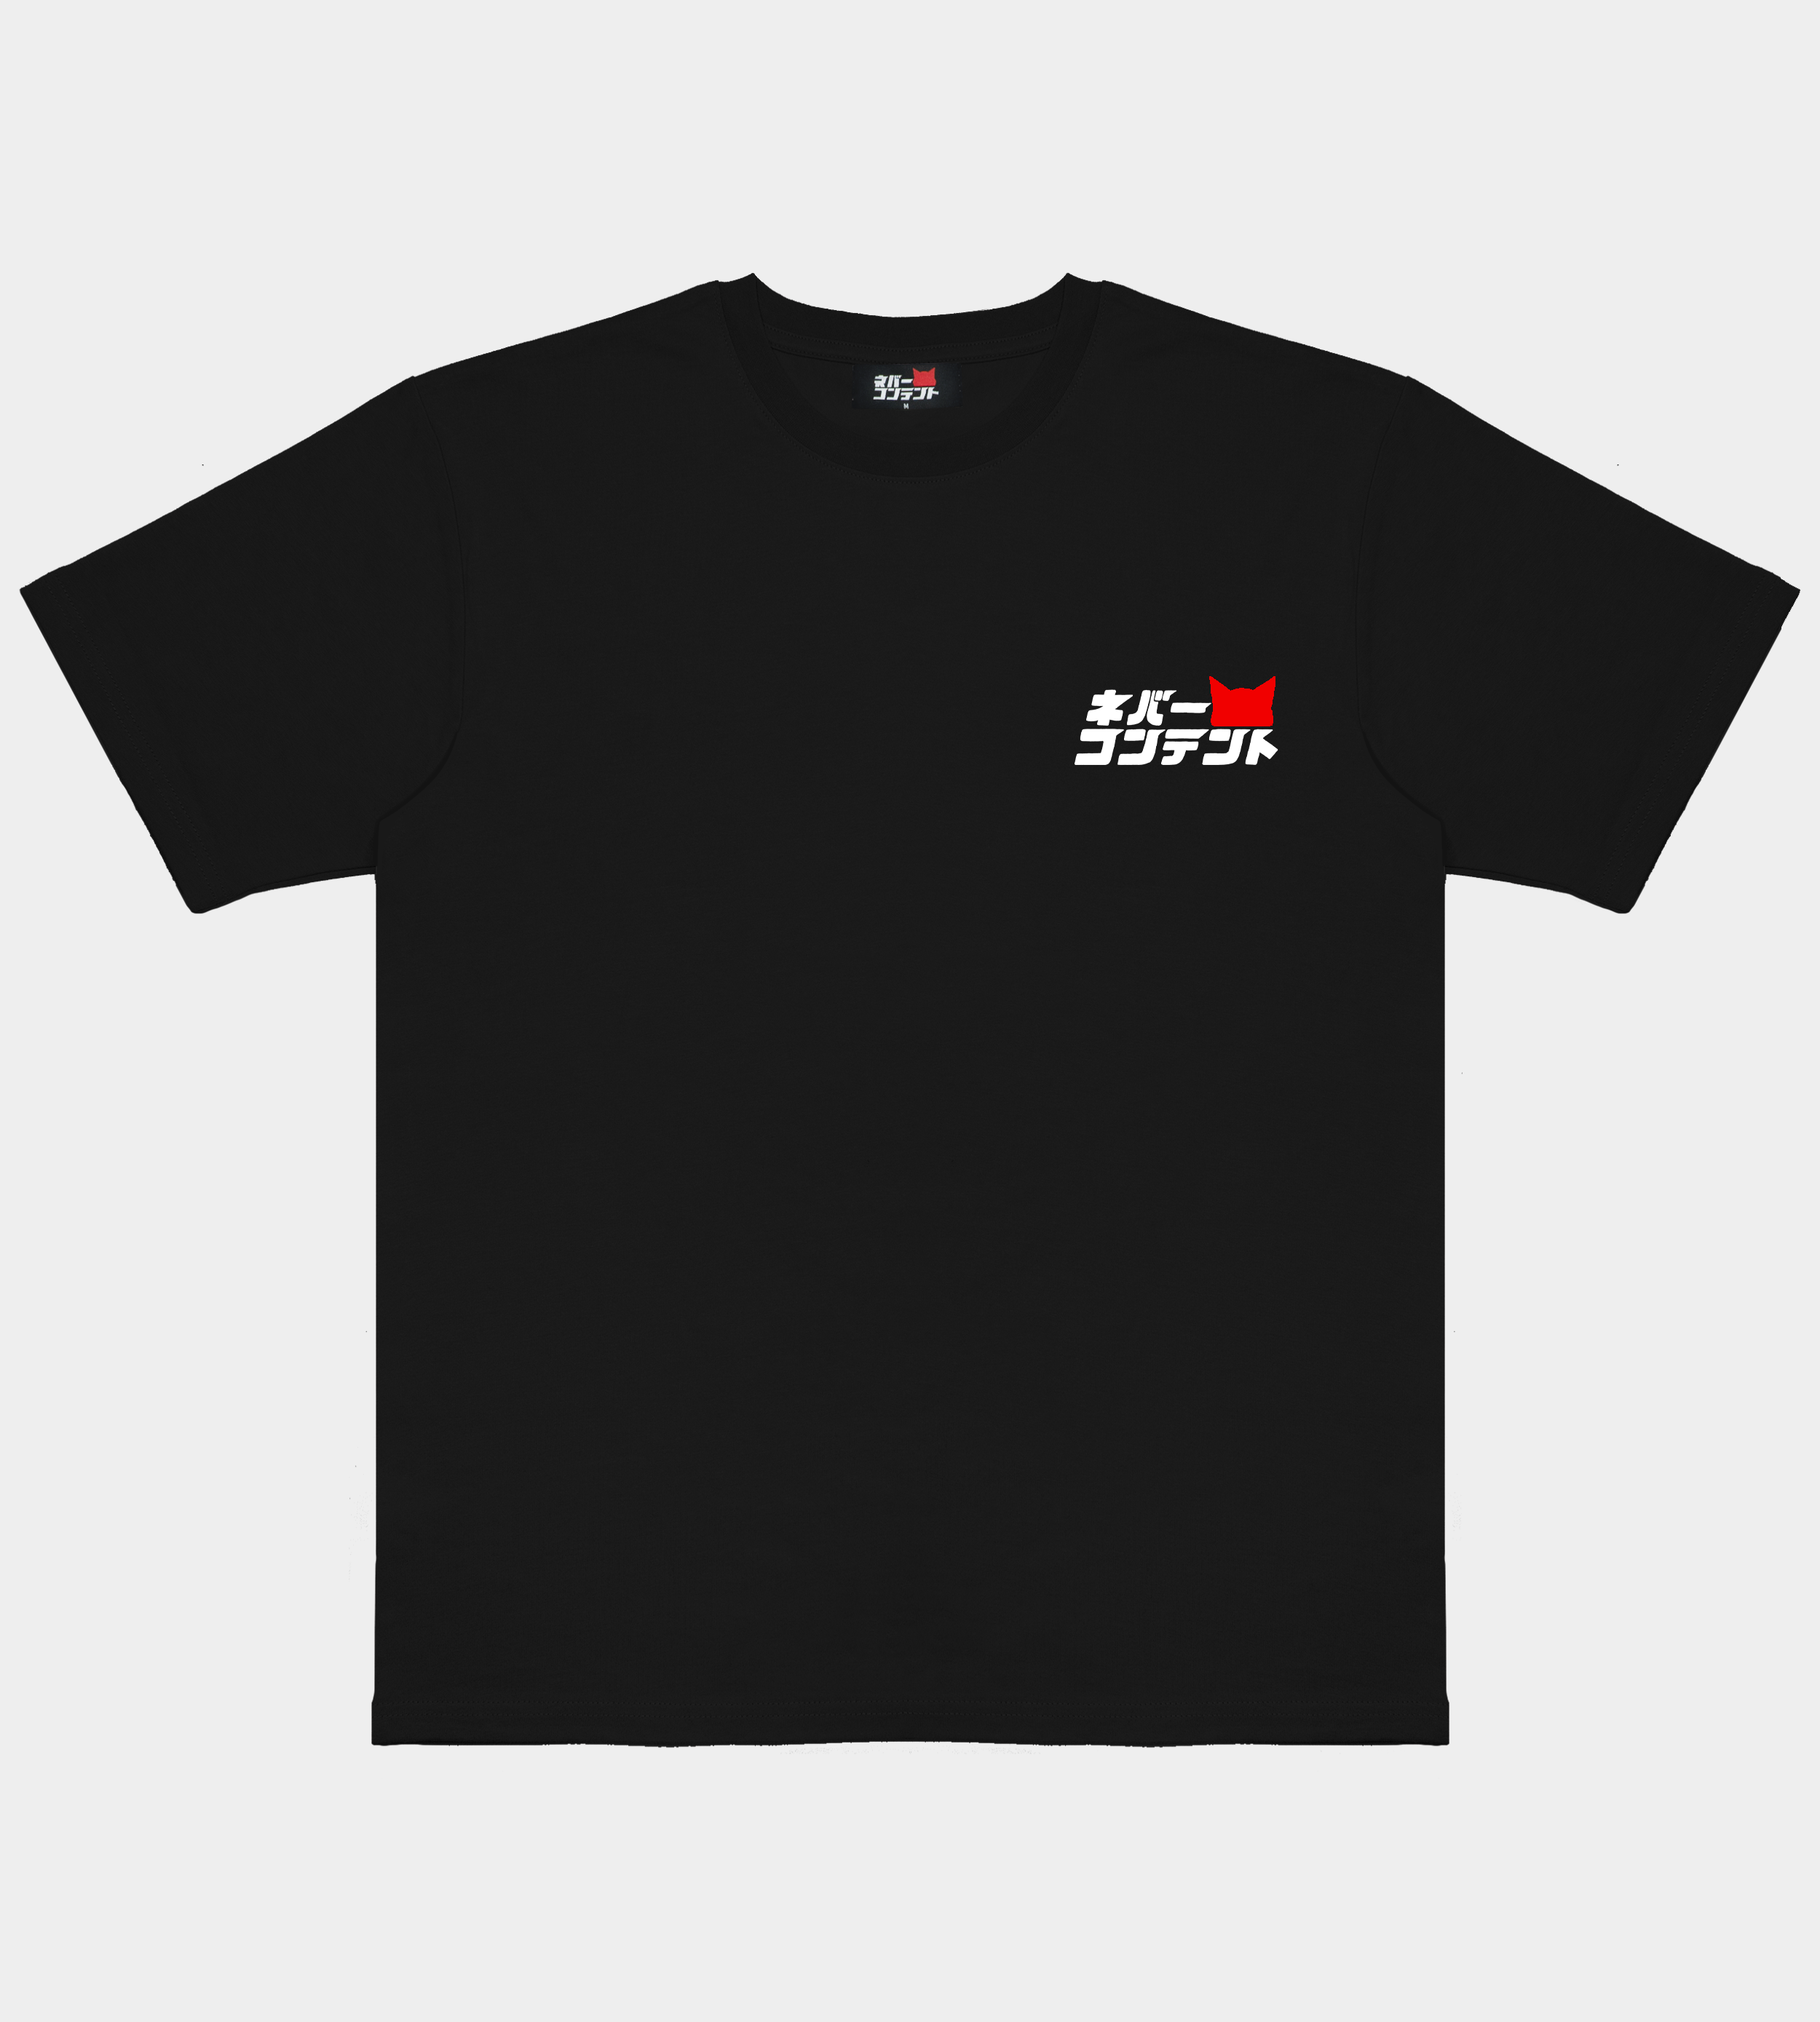 9Y "180SX" - Black Shirt